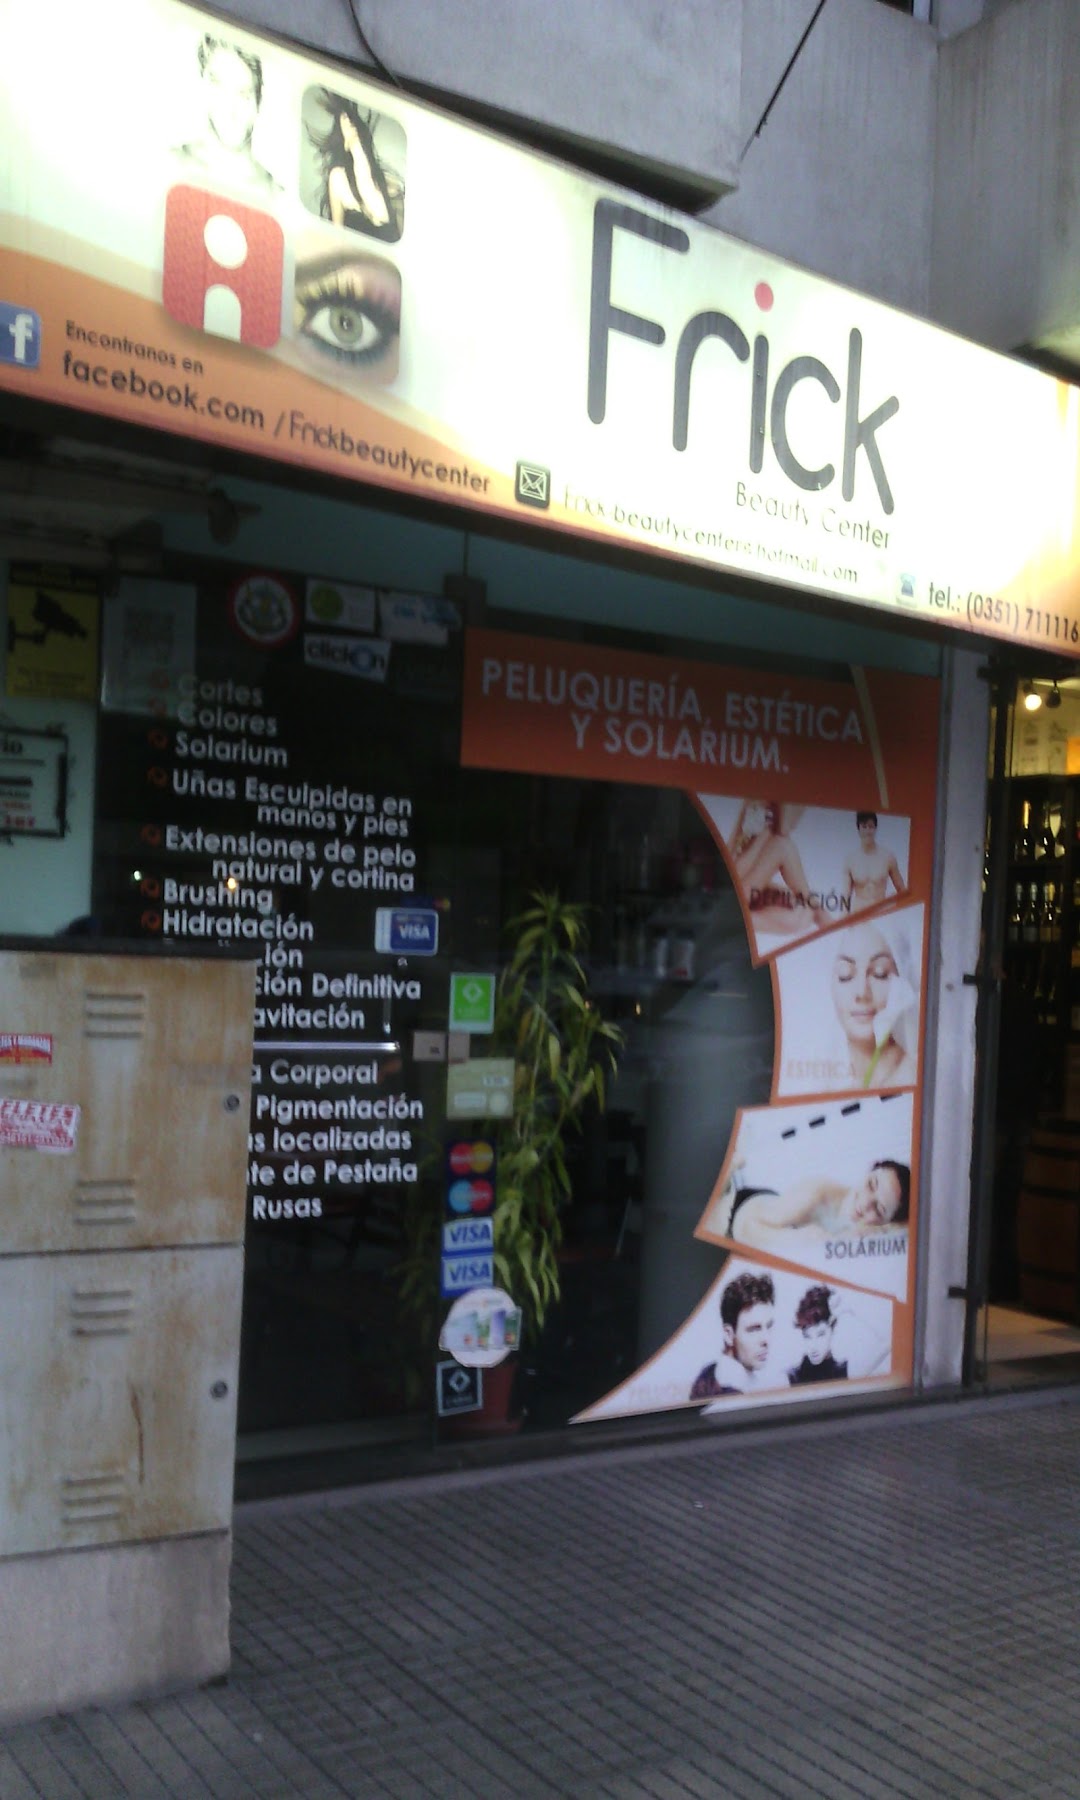 Frick Beauty Center